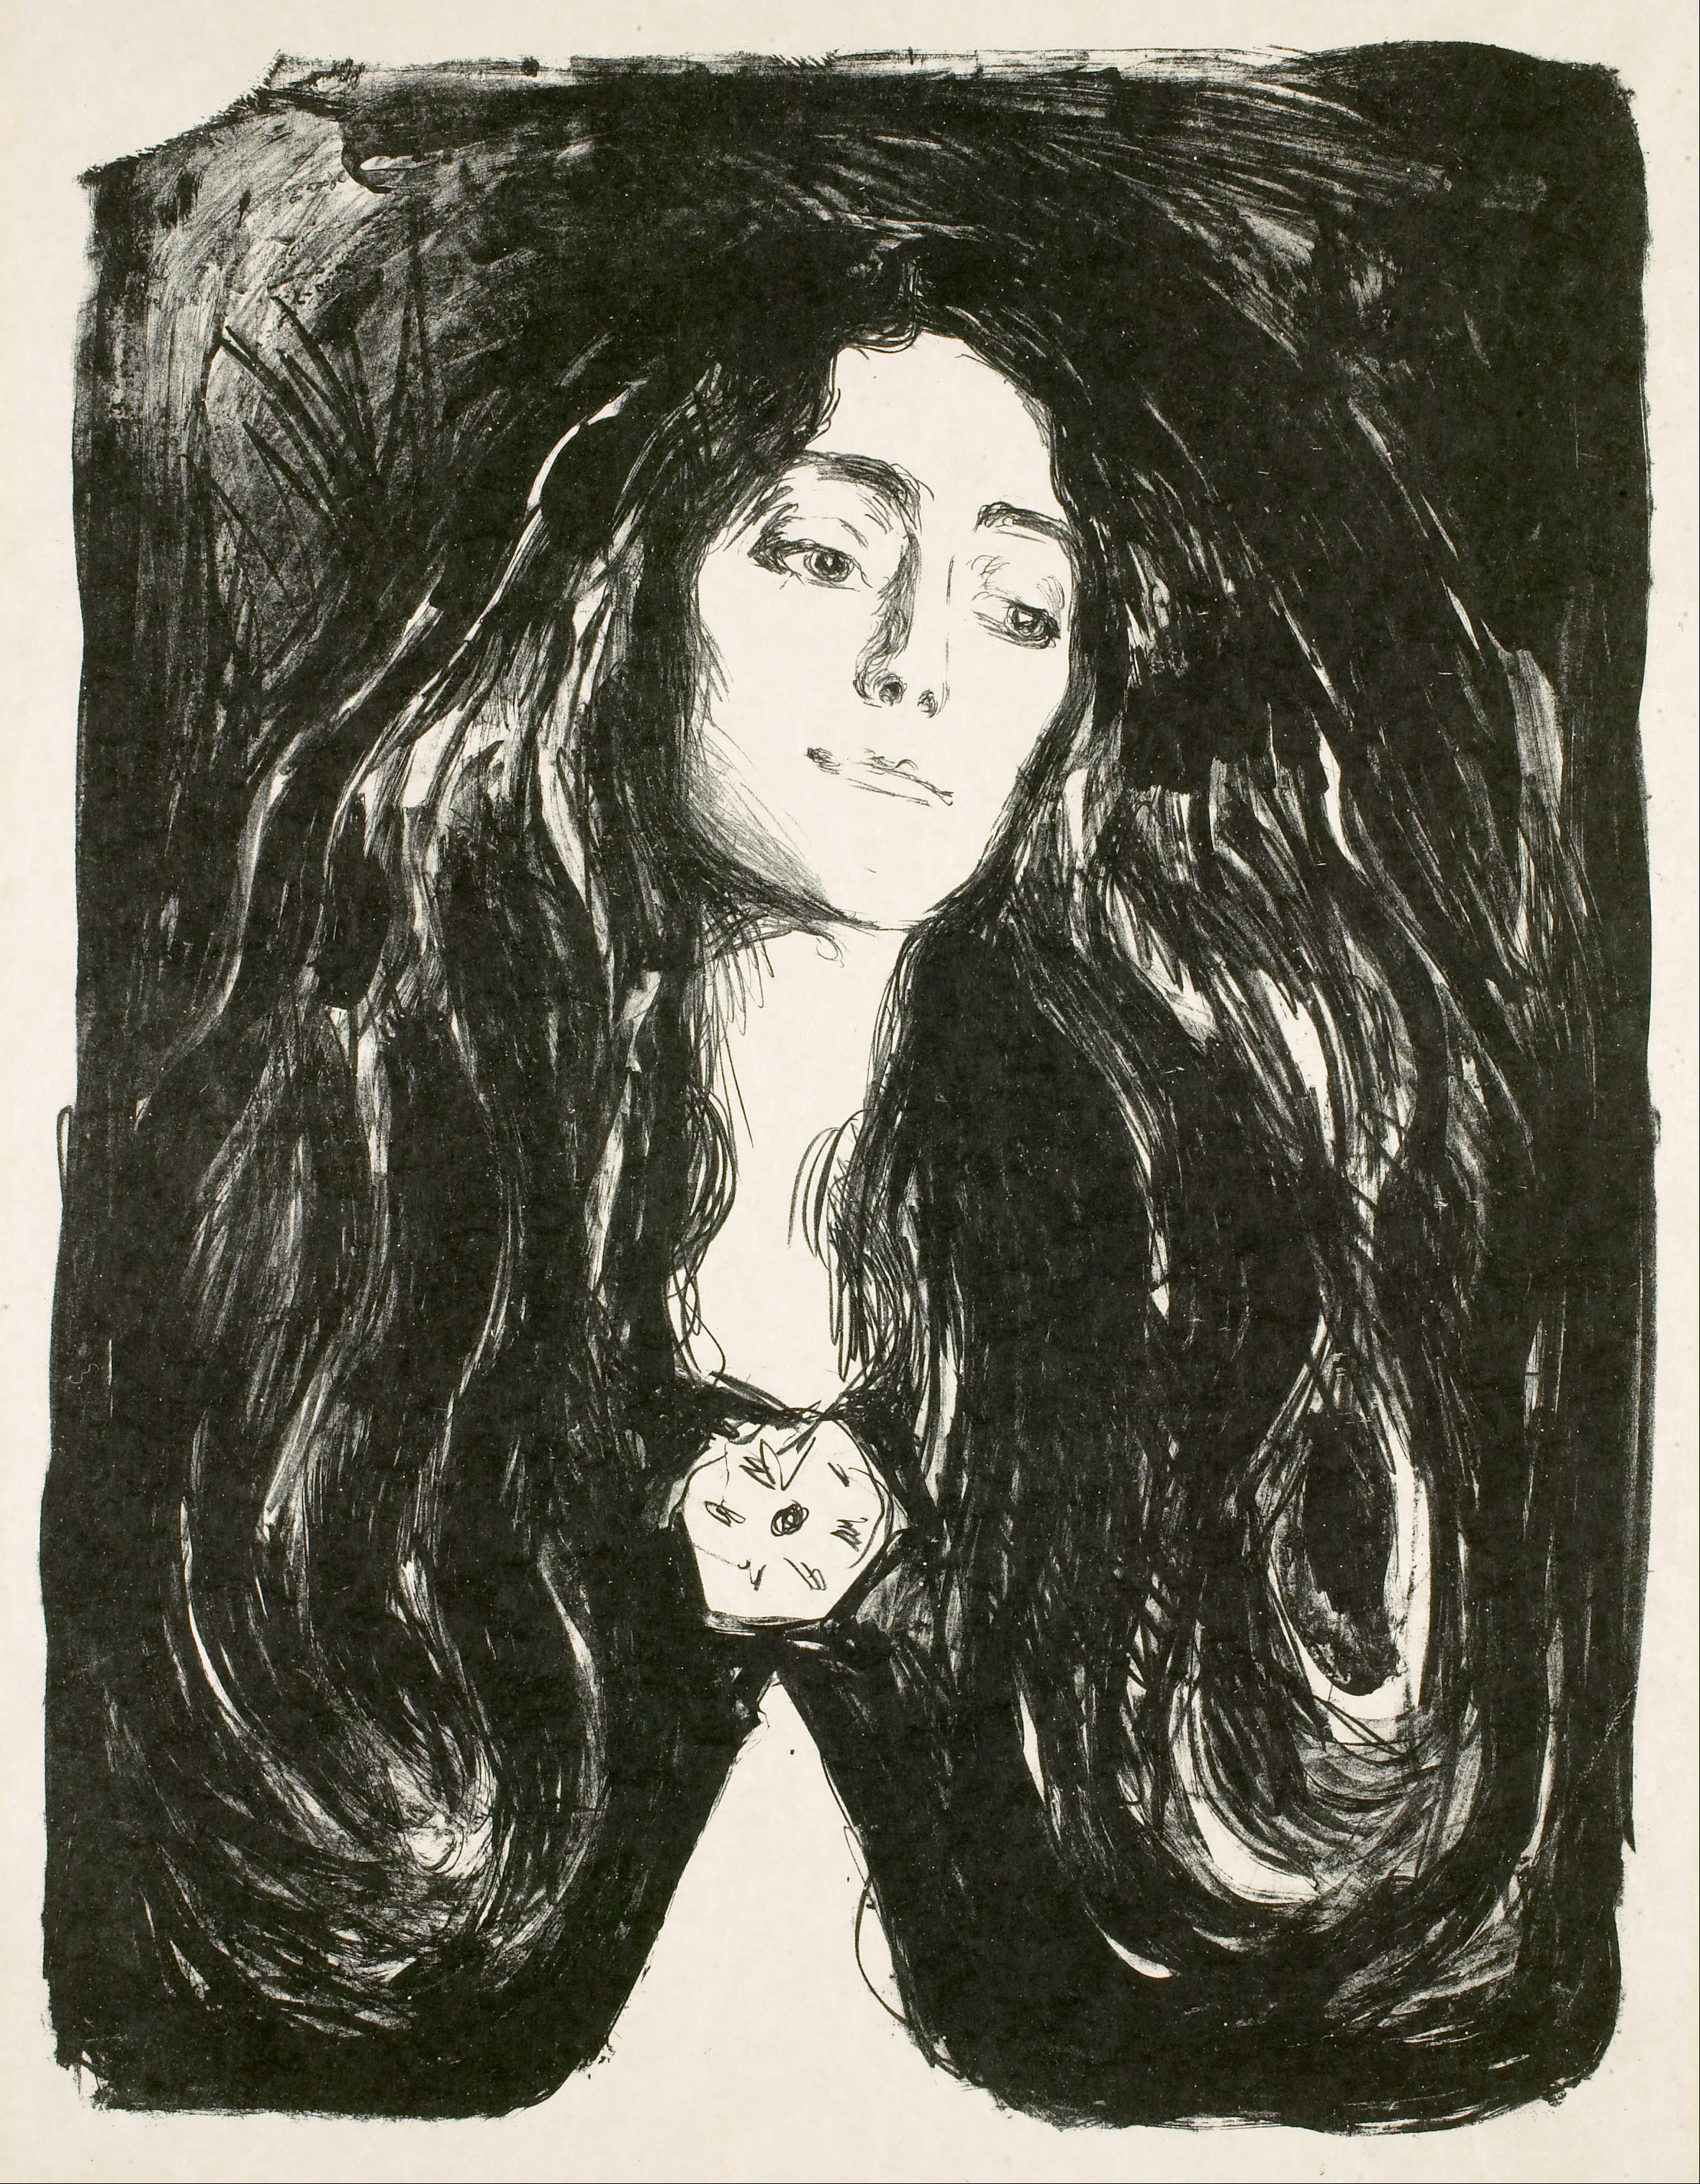 胸针. 伊娃·穆多奇 by 爱德华 蒙克 - 1903 布鲁克林博物馆